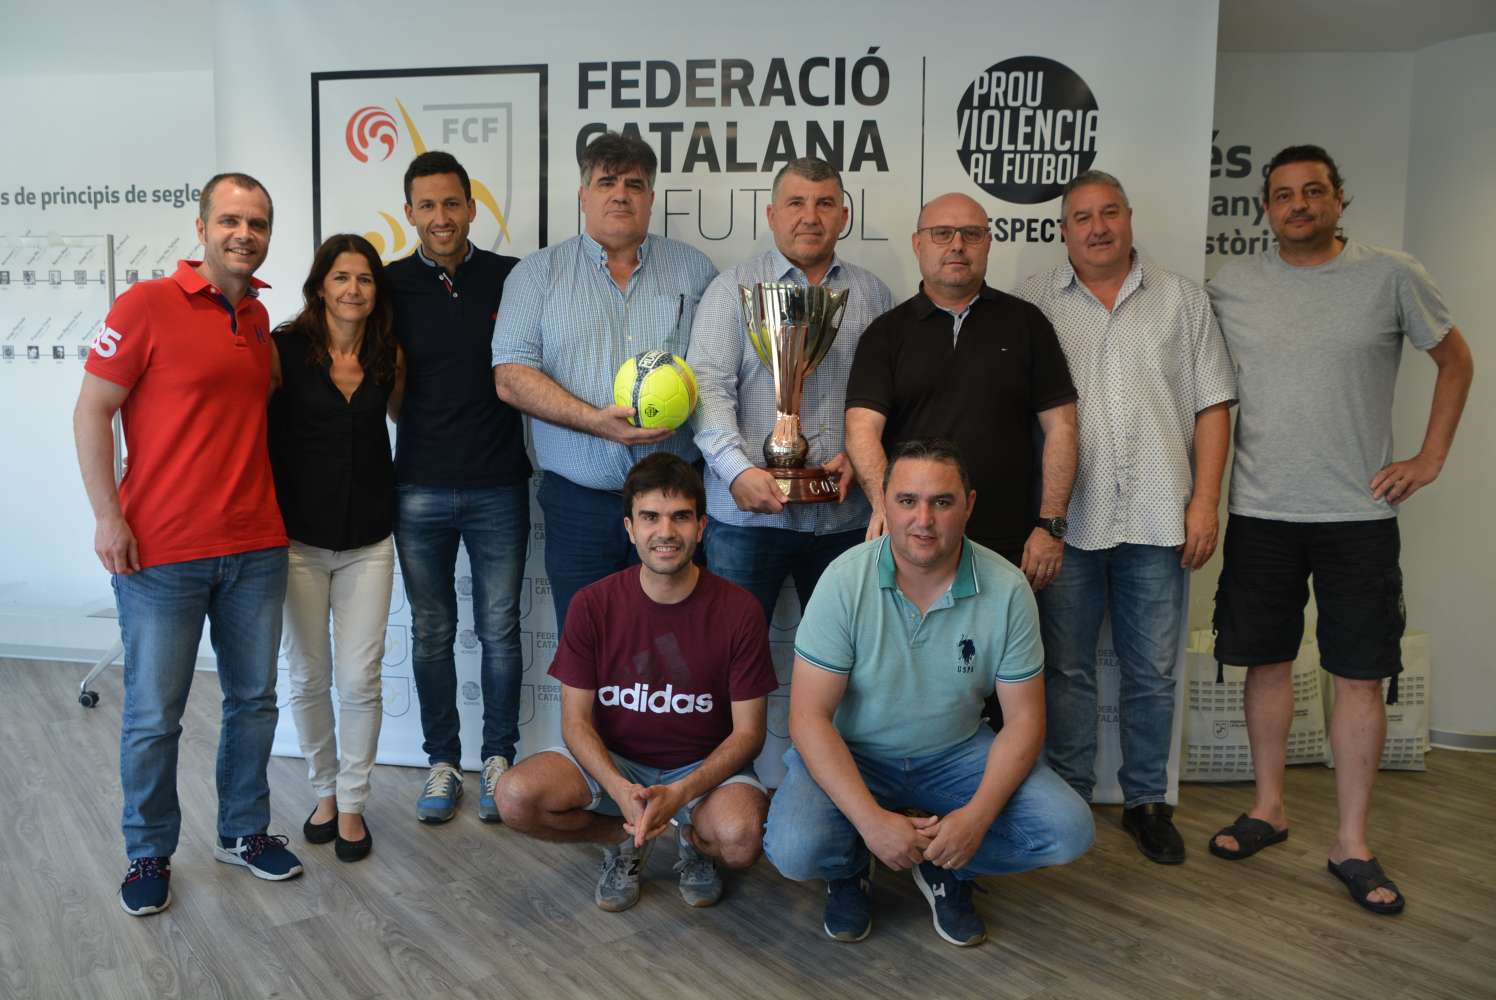 Darrera reunió amb els equips participants a la fase final de la Copa Catalunya Sènior masculina i femenina de Futbol Sala 2019